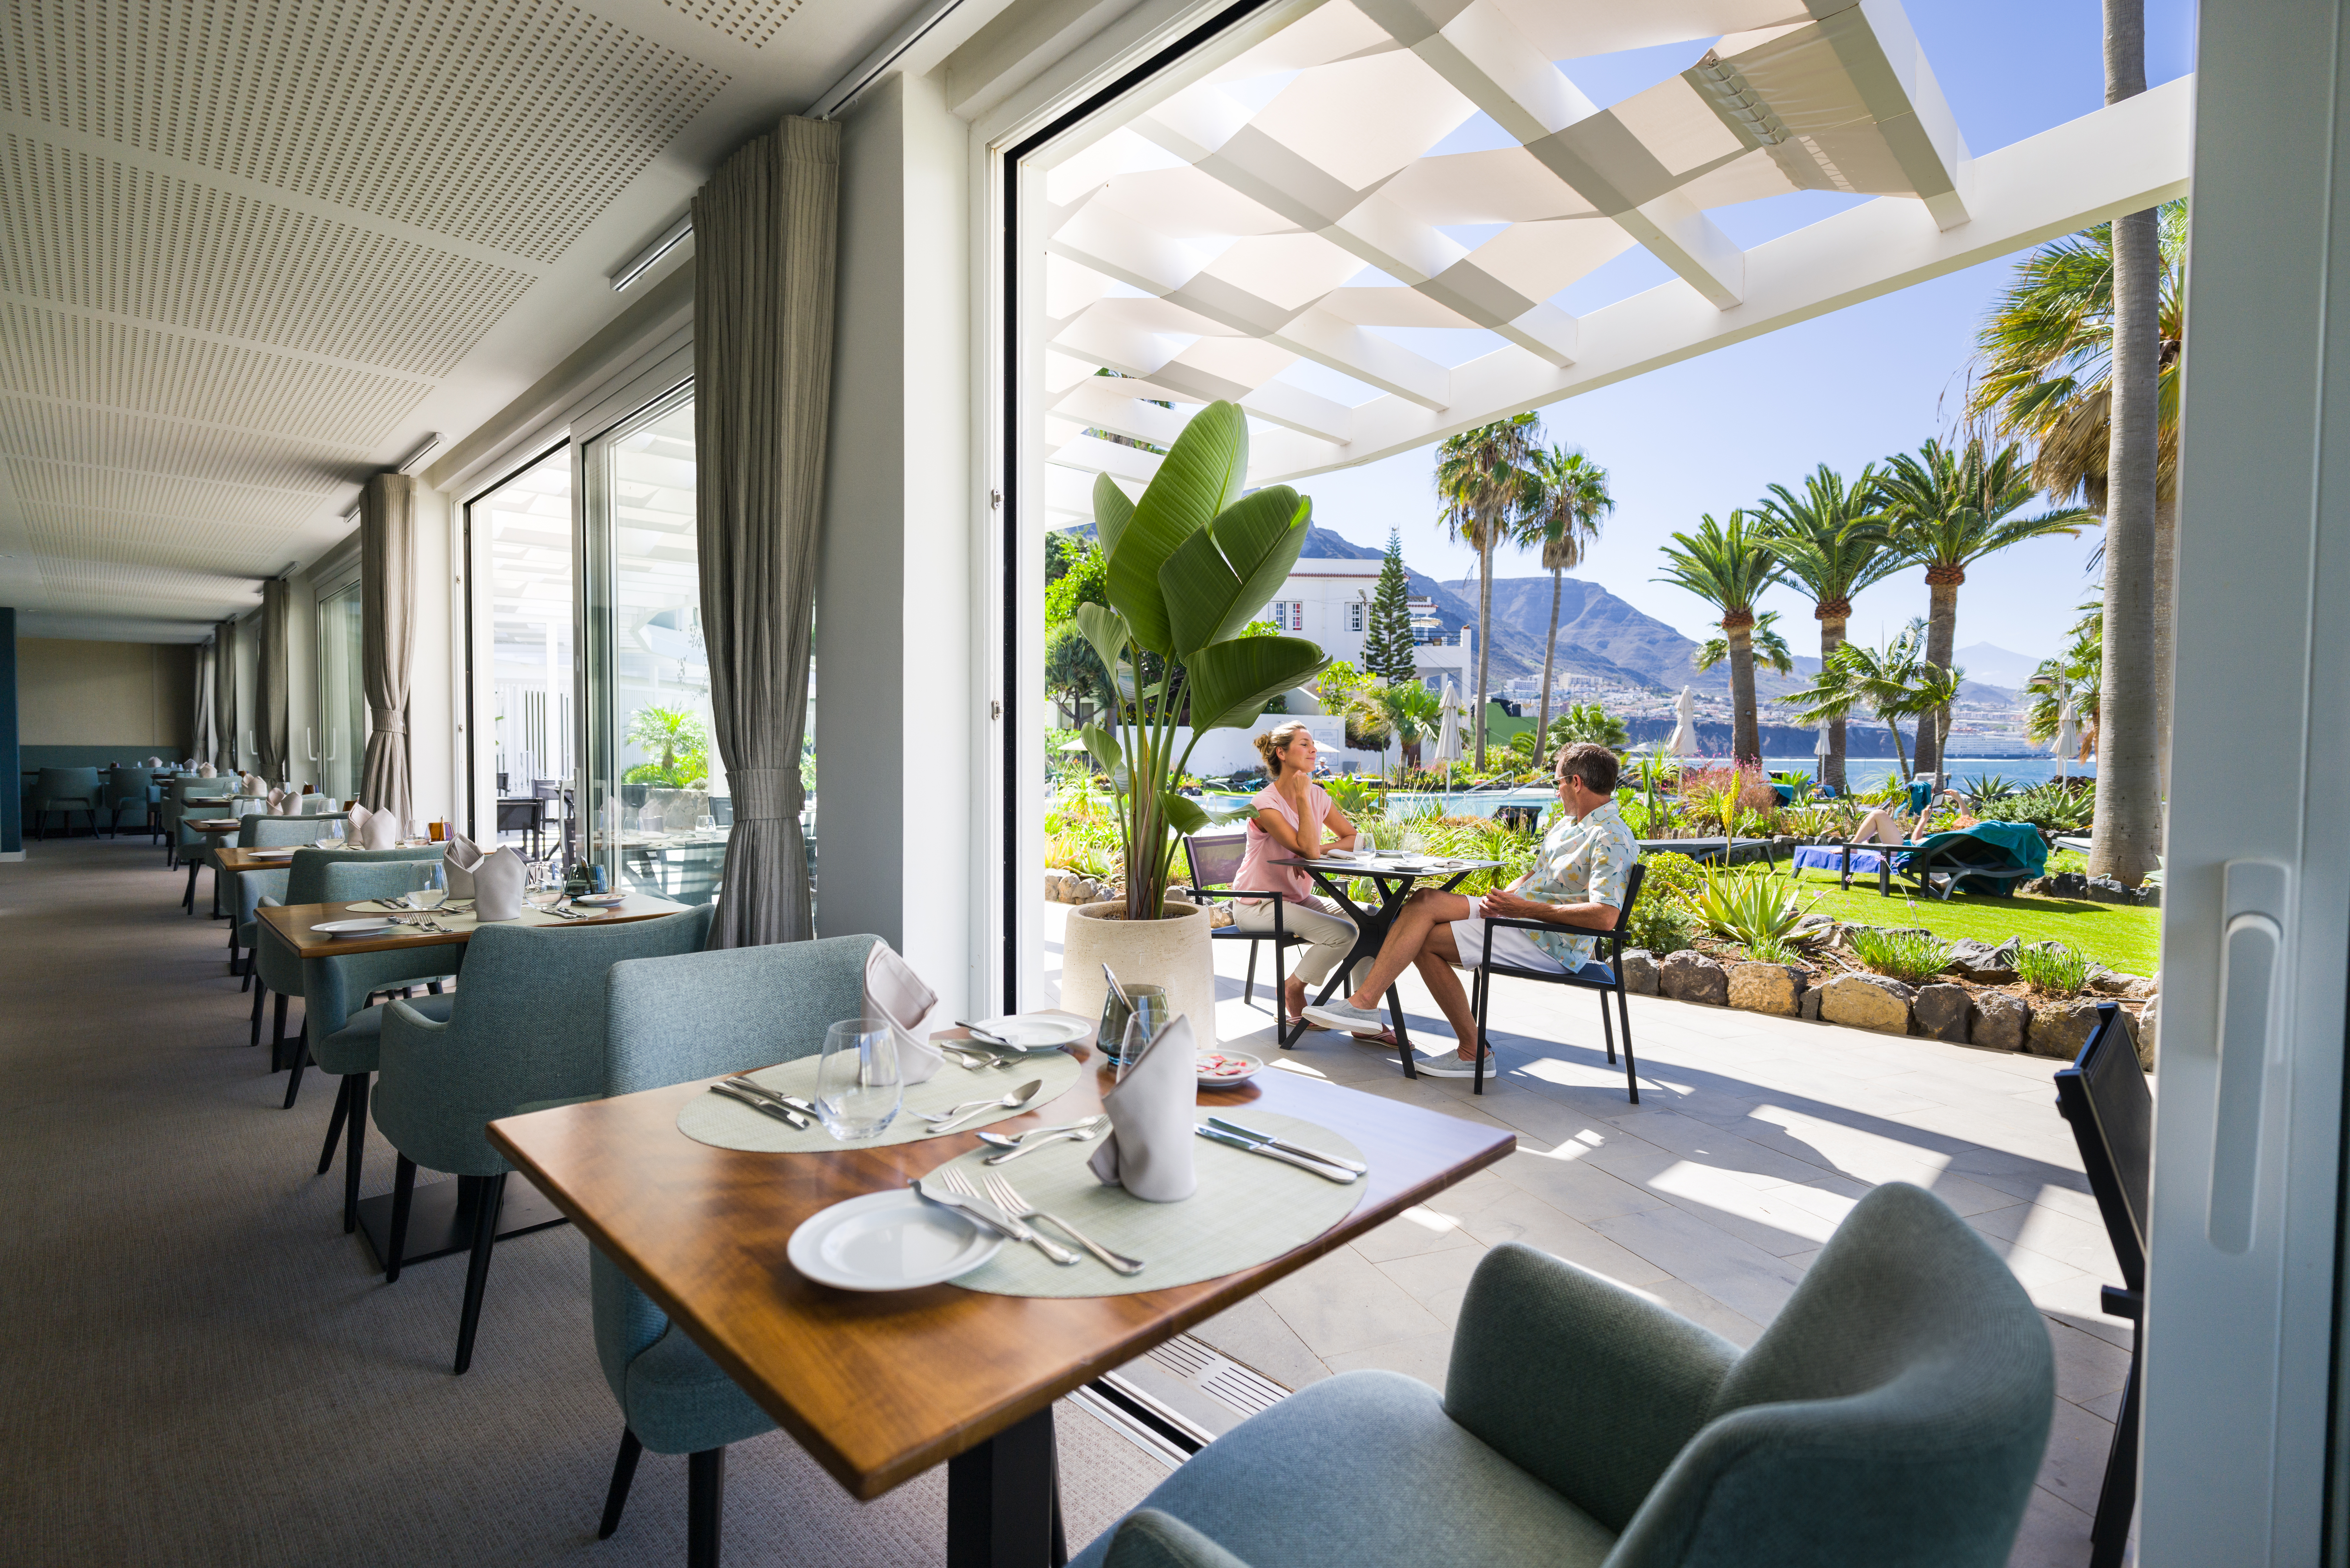 Gutschein im Wert von 1282 Euro für Urlaub im OCÉANO Health Spa Hotel auf Teneriffa